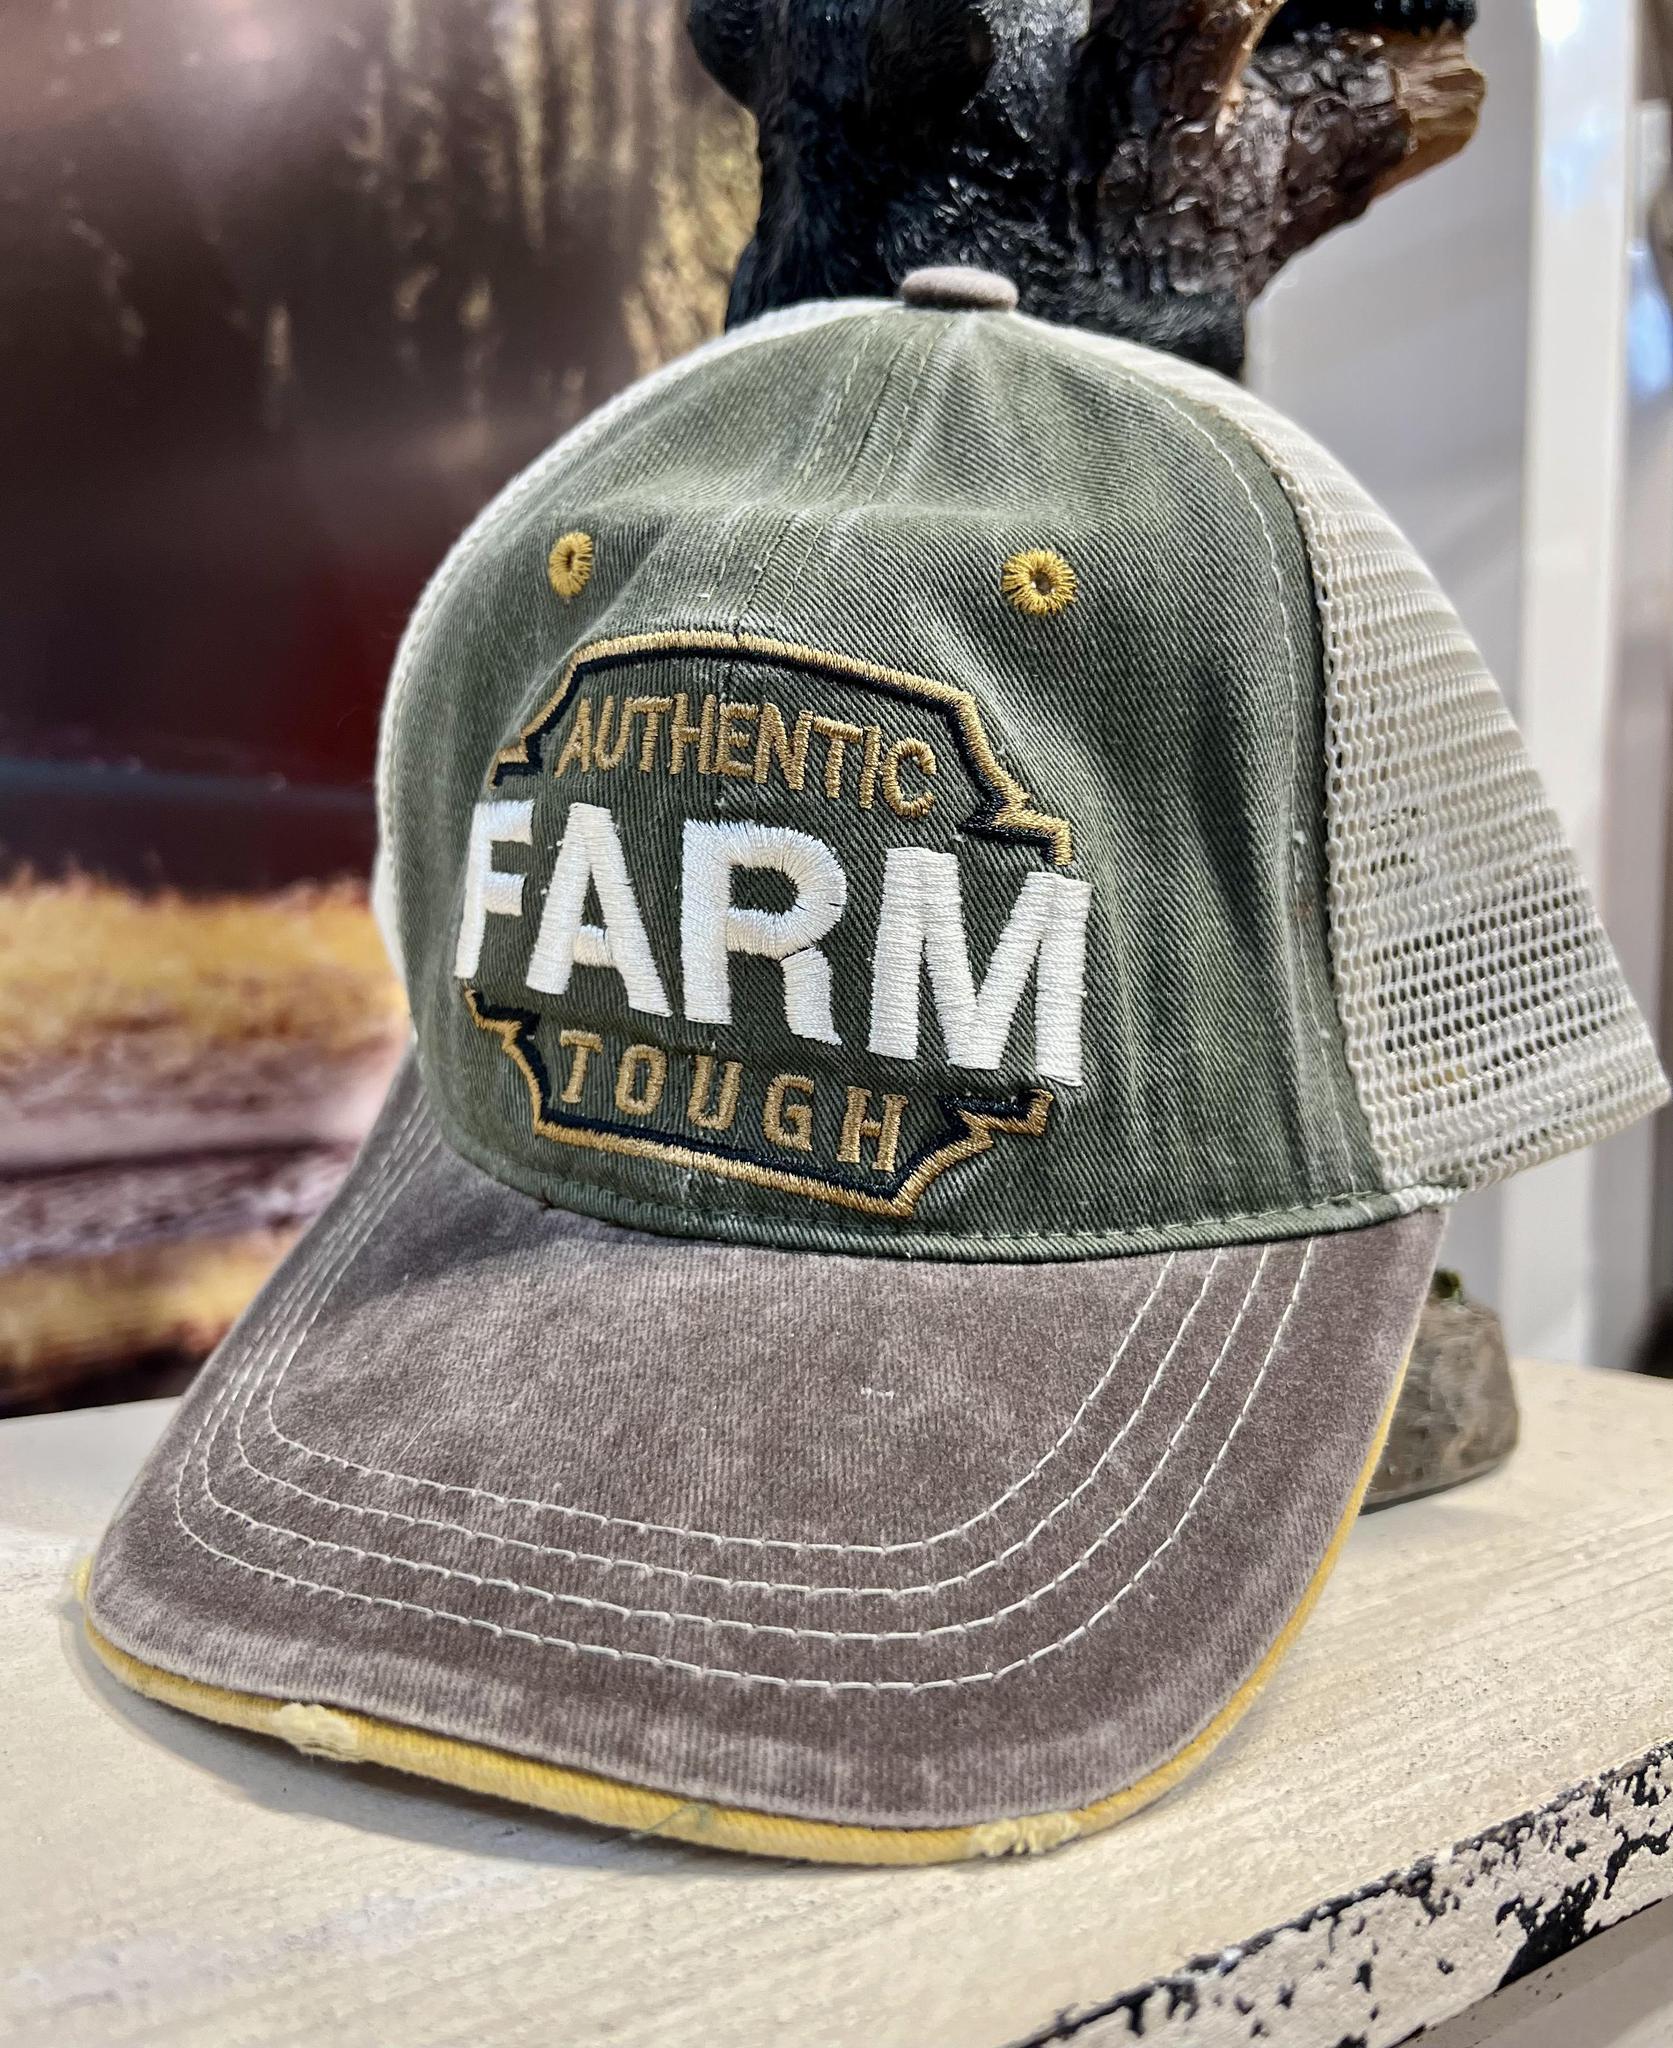 Authentic Farm Hat